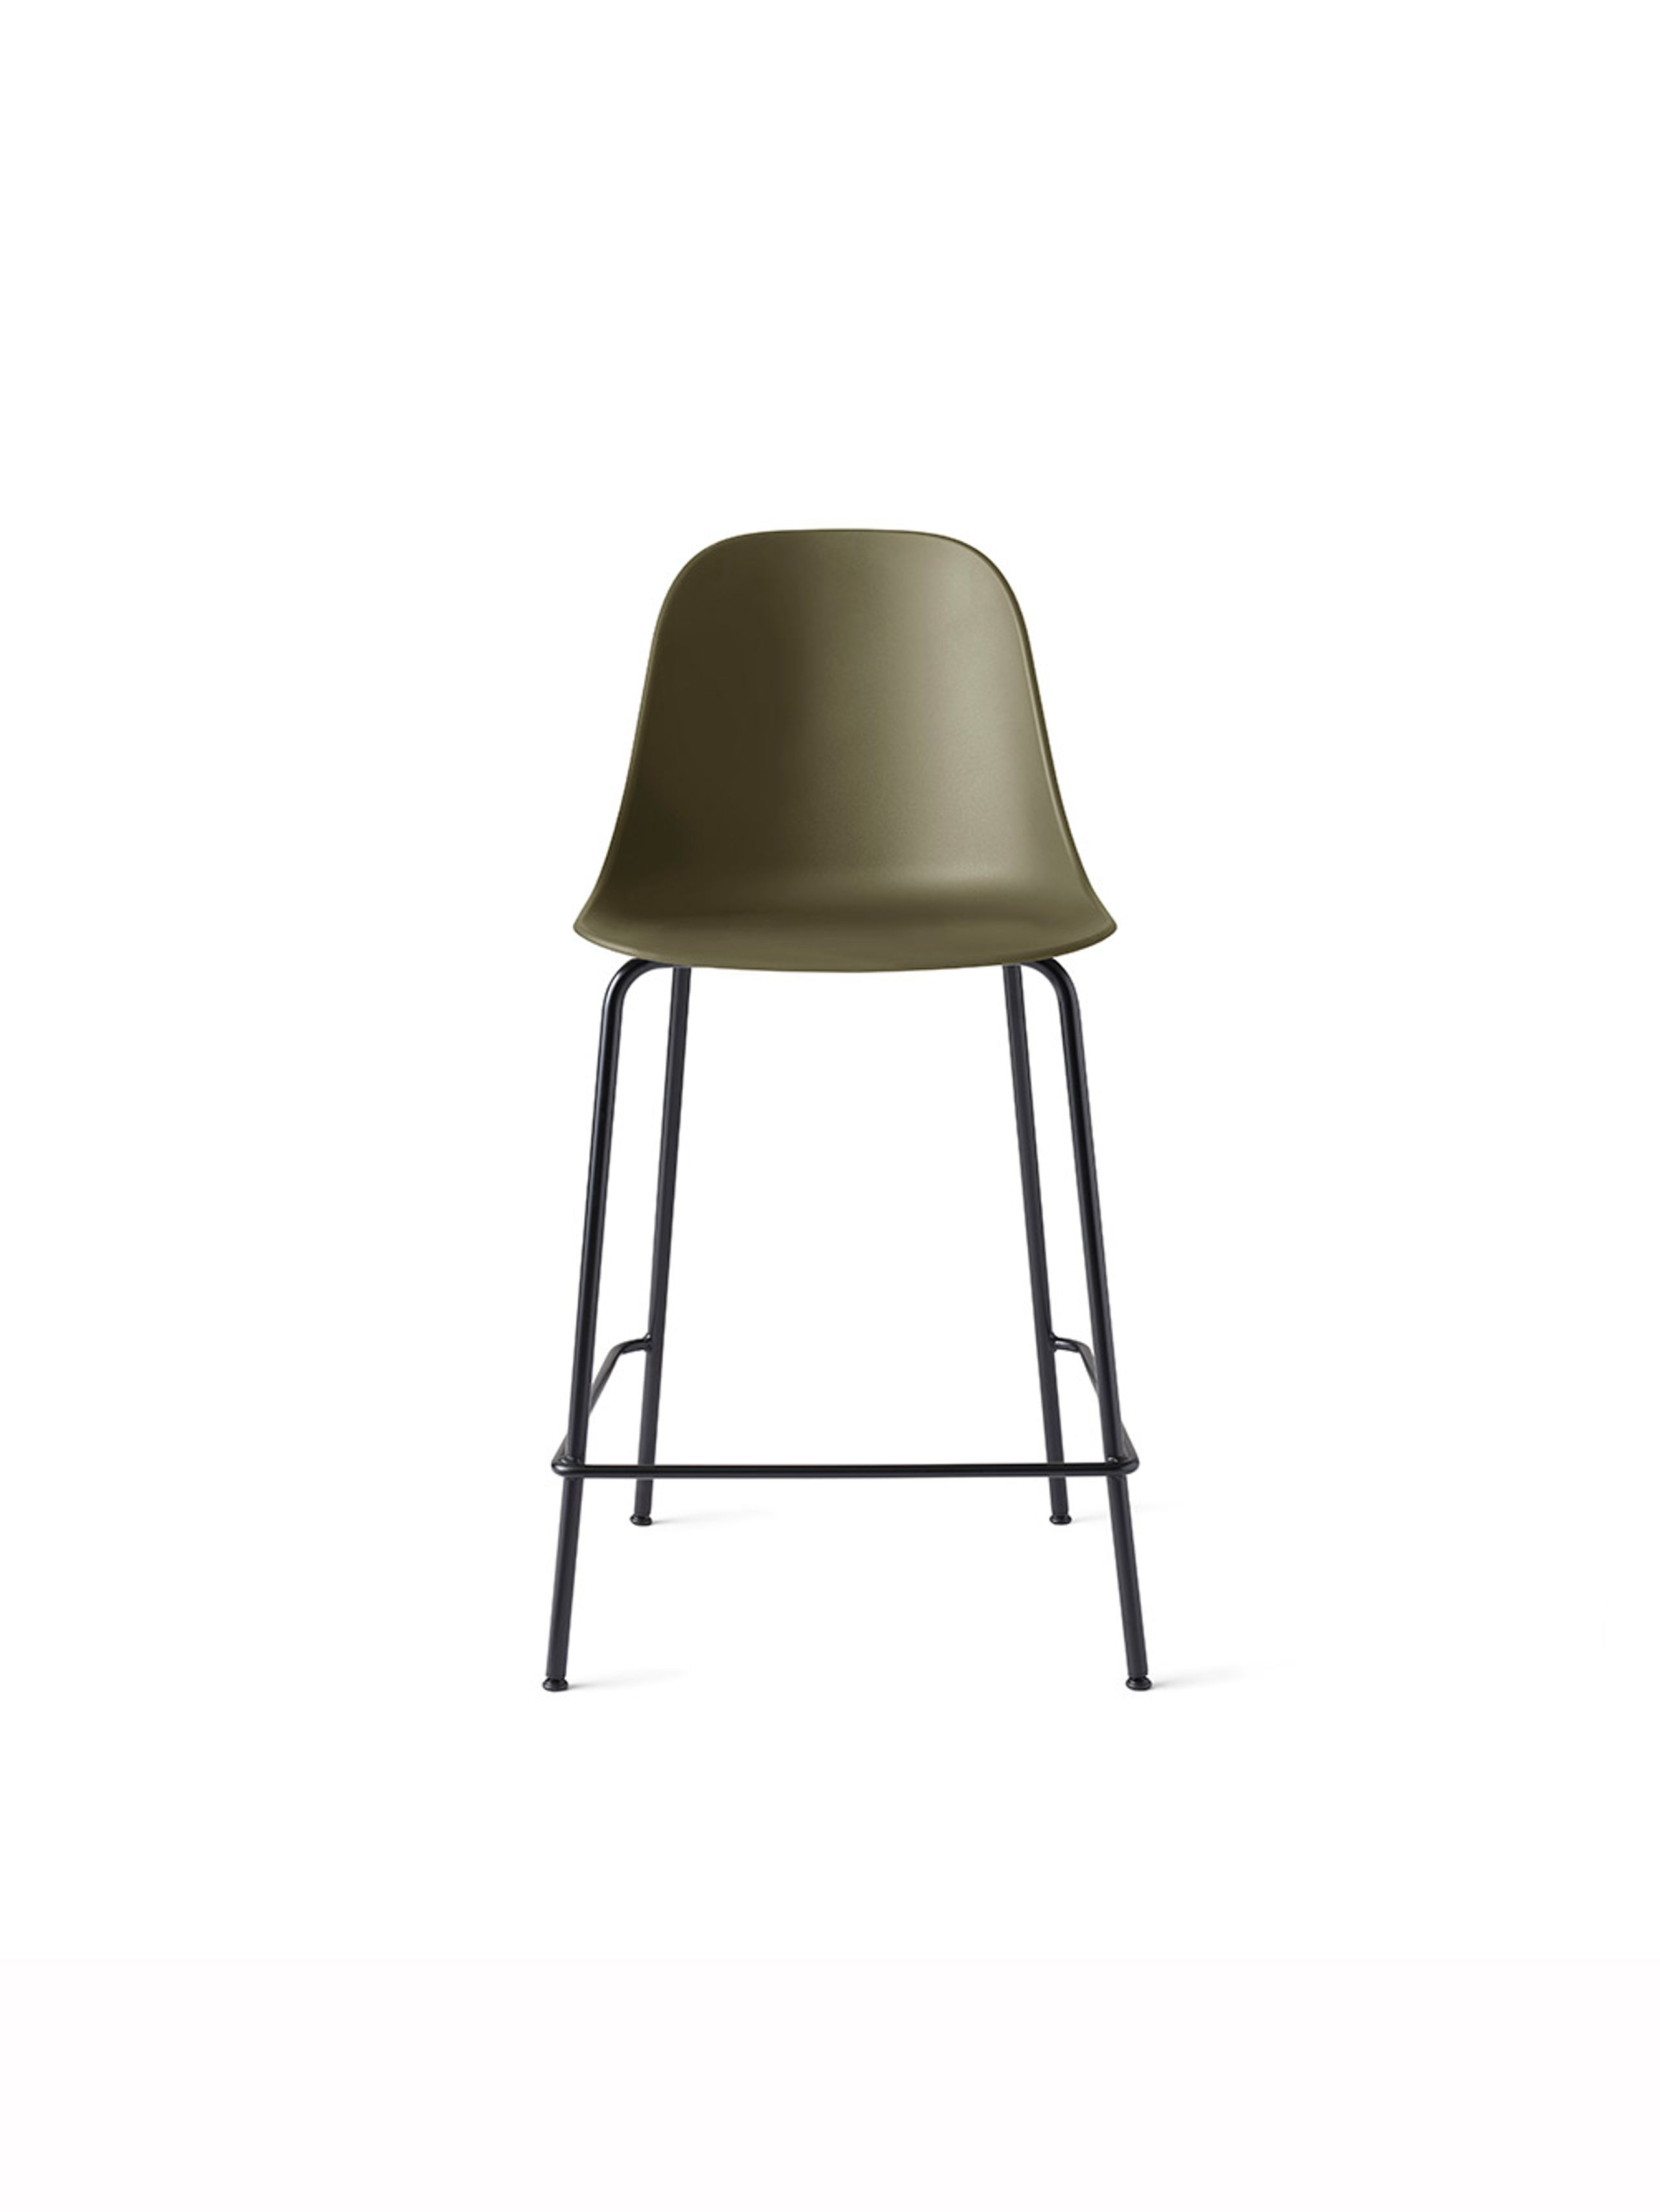 MENU - Banco de bar - Harbour Side Counter Chair / Black Steel Base - Olive